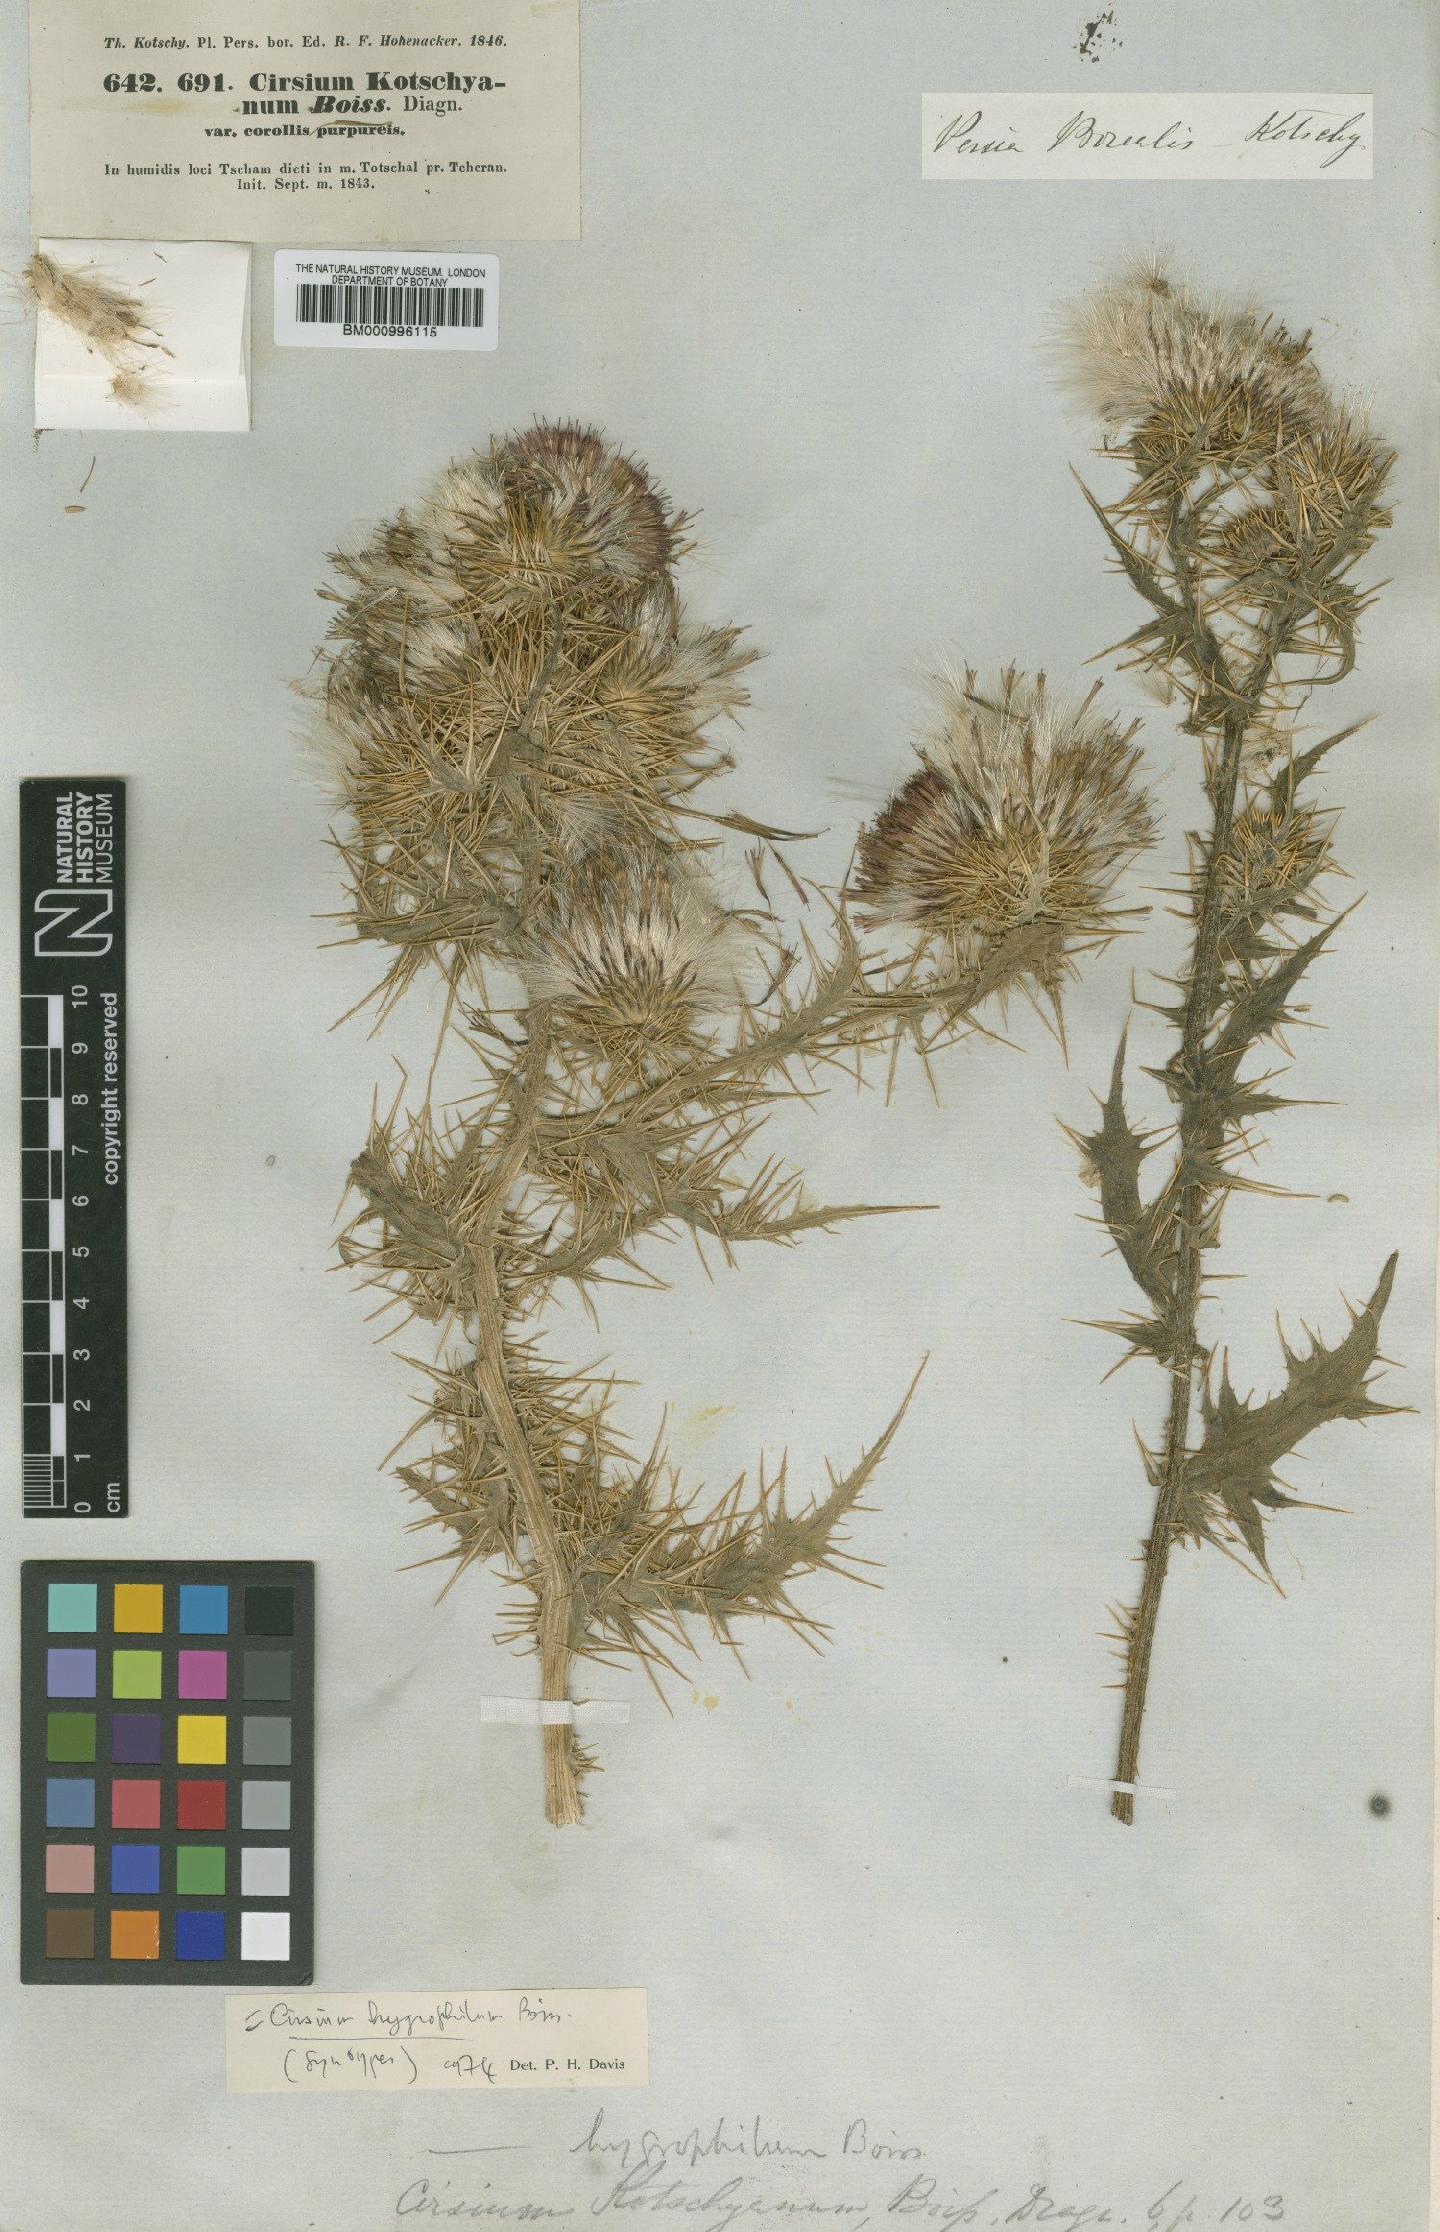 To NHMUK collection (Cirsium hygrophilum Boiss.; Type; NHMUK:ecatalogue:475812)